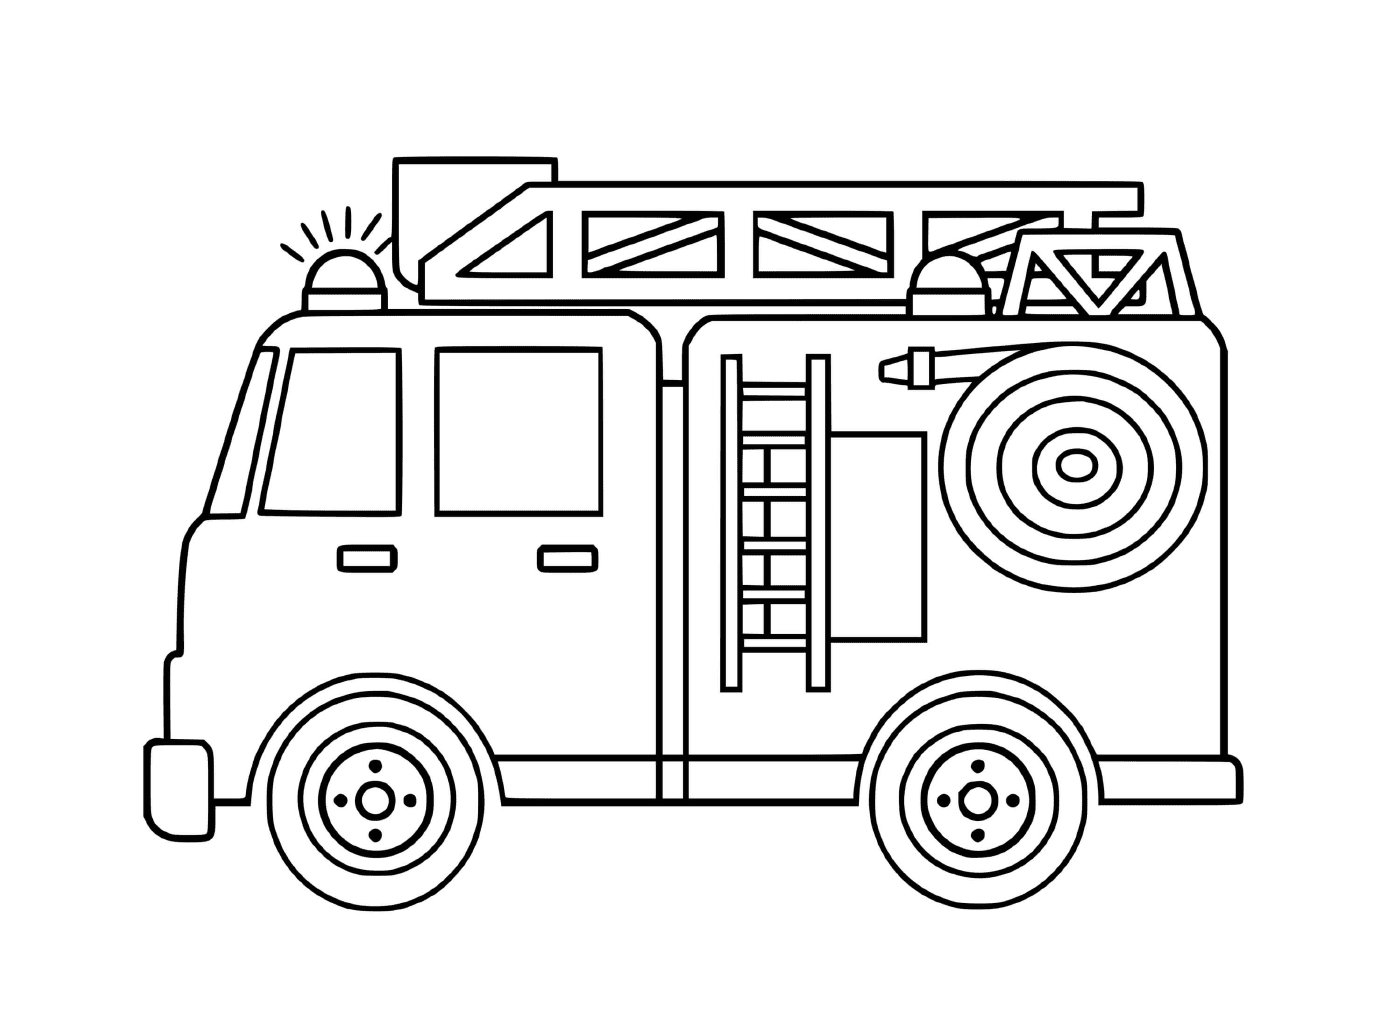  شاحنة إطفاء بسيطة وعملية 